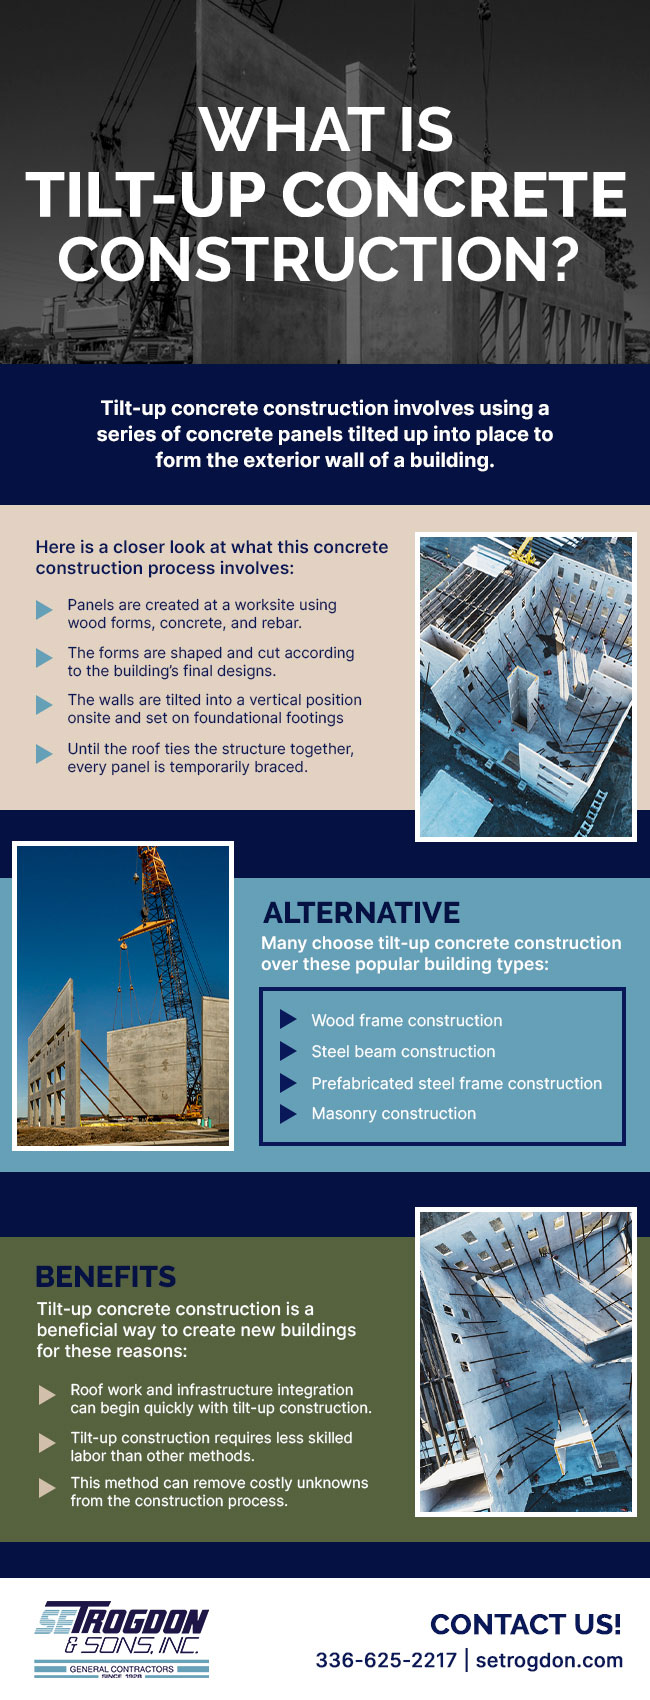 What is Tilt-Up Concrete Construction?